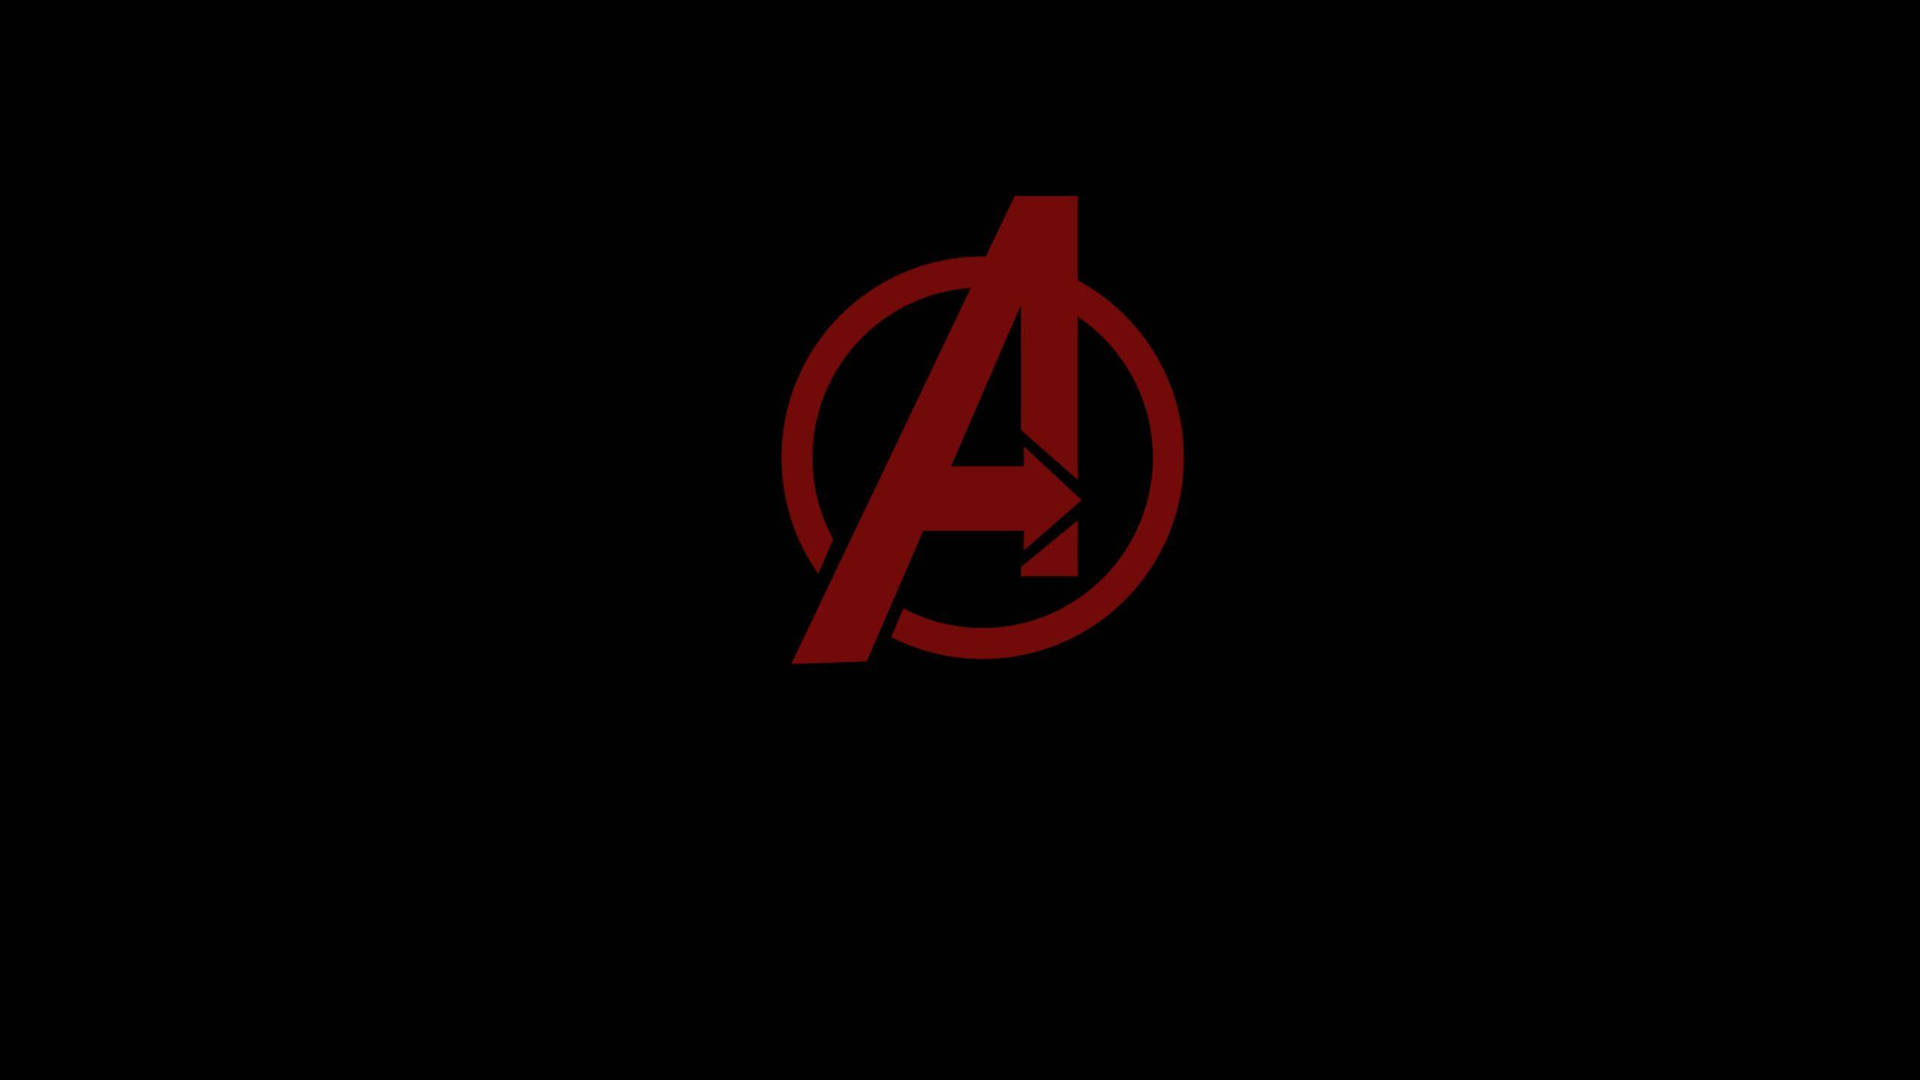 The Red Avengers Logo Wallpaper